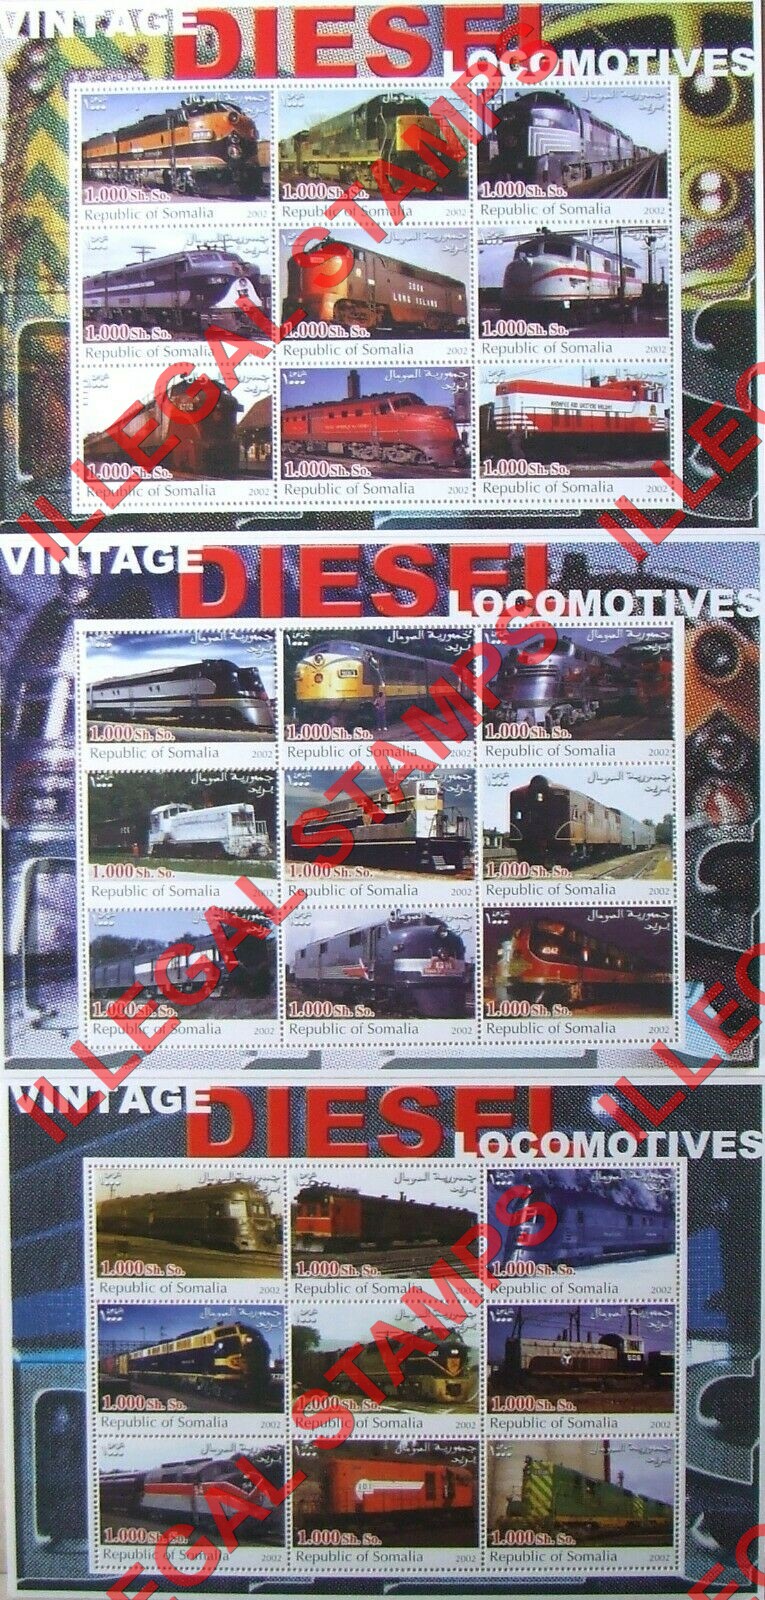 Somalia 2002 Vintage Diesel Locomotives Illegal Stamp Souvenir Sheets of 9